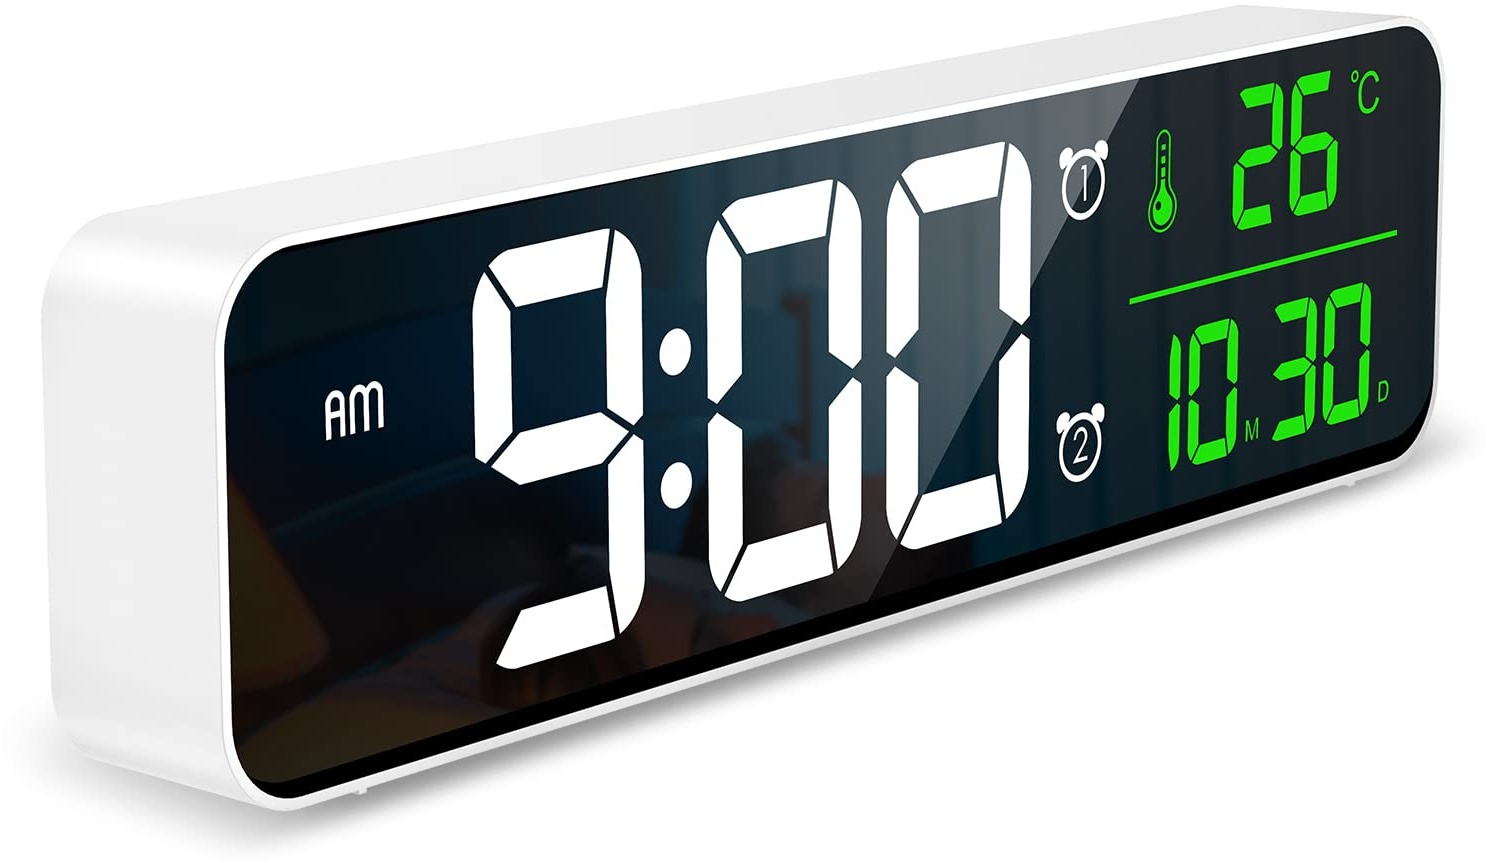 Ankilo Upgraded Wanduhr Digital Groß, 10,5'' LED Digital Wecker, Grosse LCD Anzeige Wanduhr, Digitale Wanduhr mit Kalender und Temperatur, Lauter Alarm und Klar, Kalenderuhr für Decor